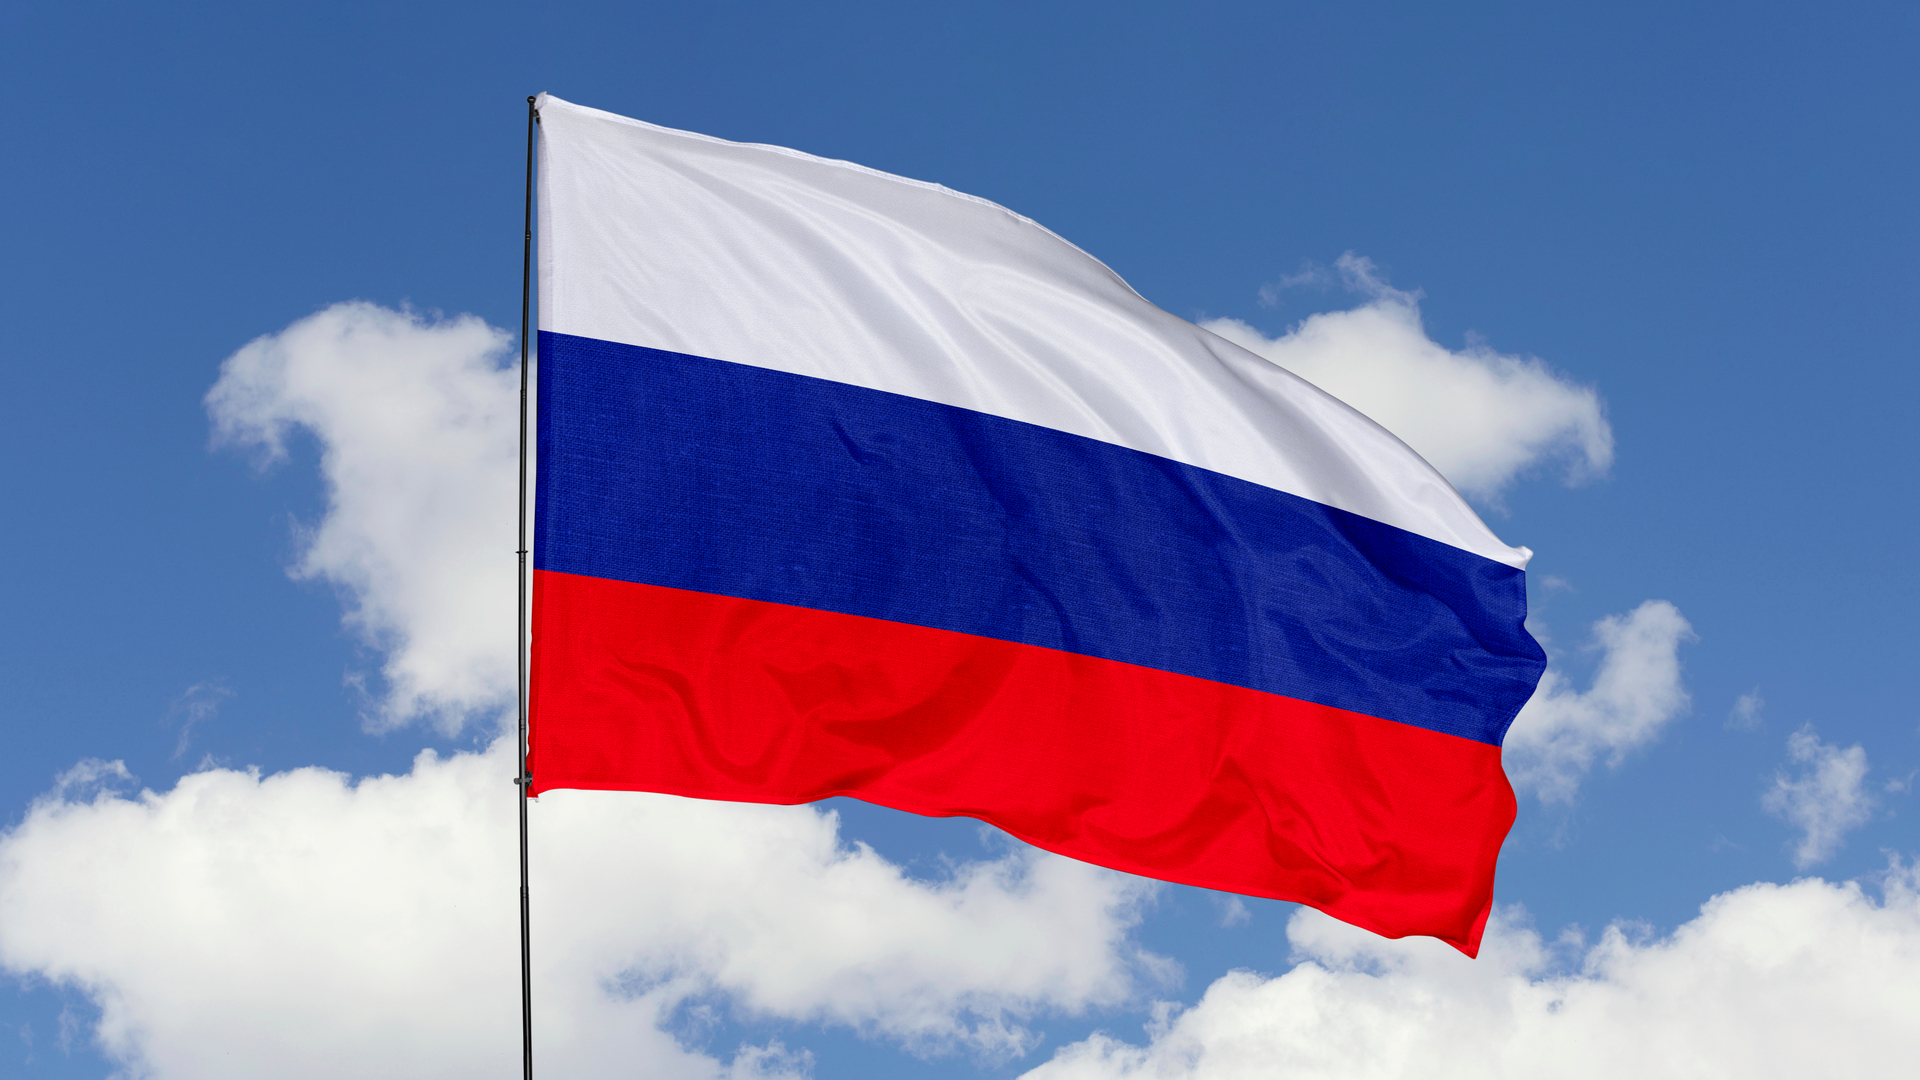 Rusyadan Bitcoin Madencileri Icin Kanun Degisikligi Hapis Cezasi Soz Konusu